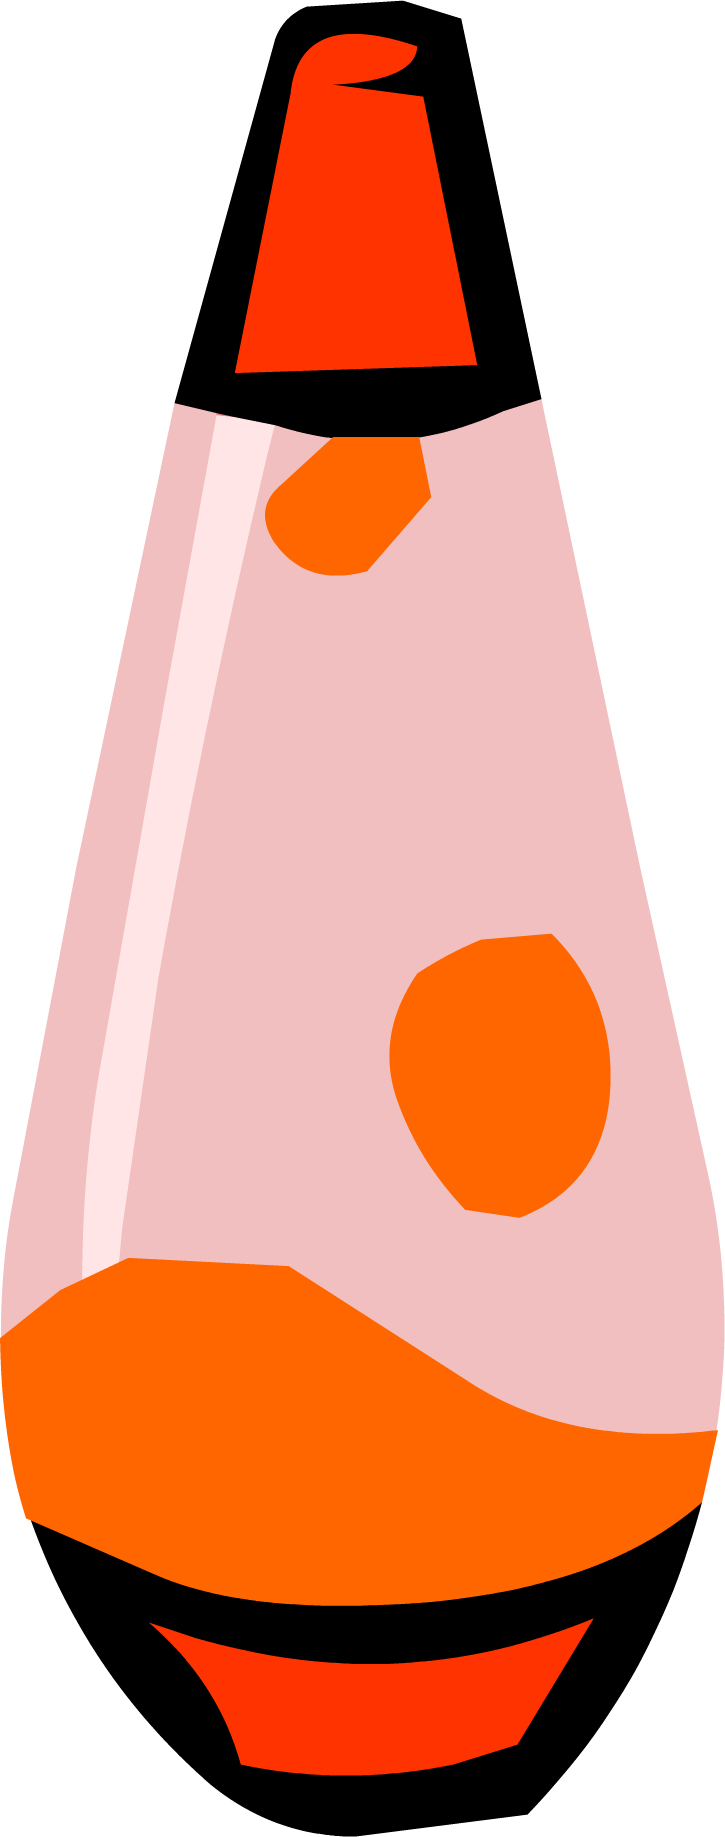 Red Lava Lamp - Codigos De Lava Lamp Free Penguin (1148x1148)